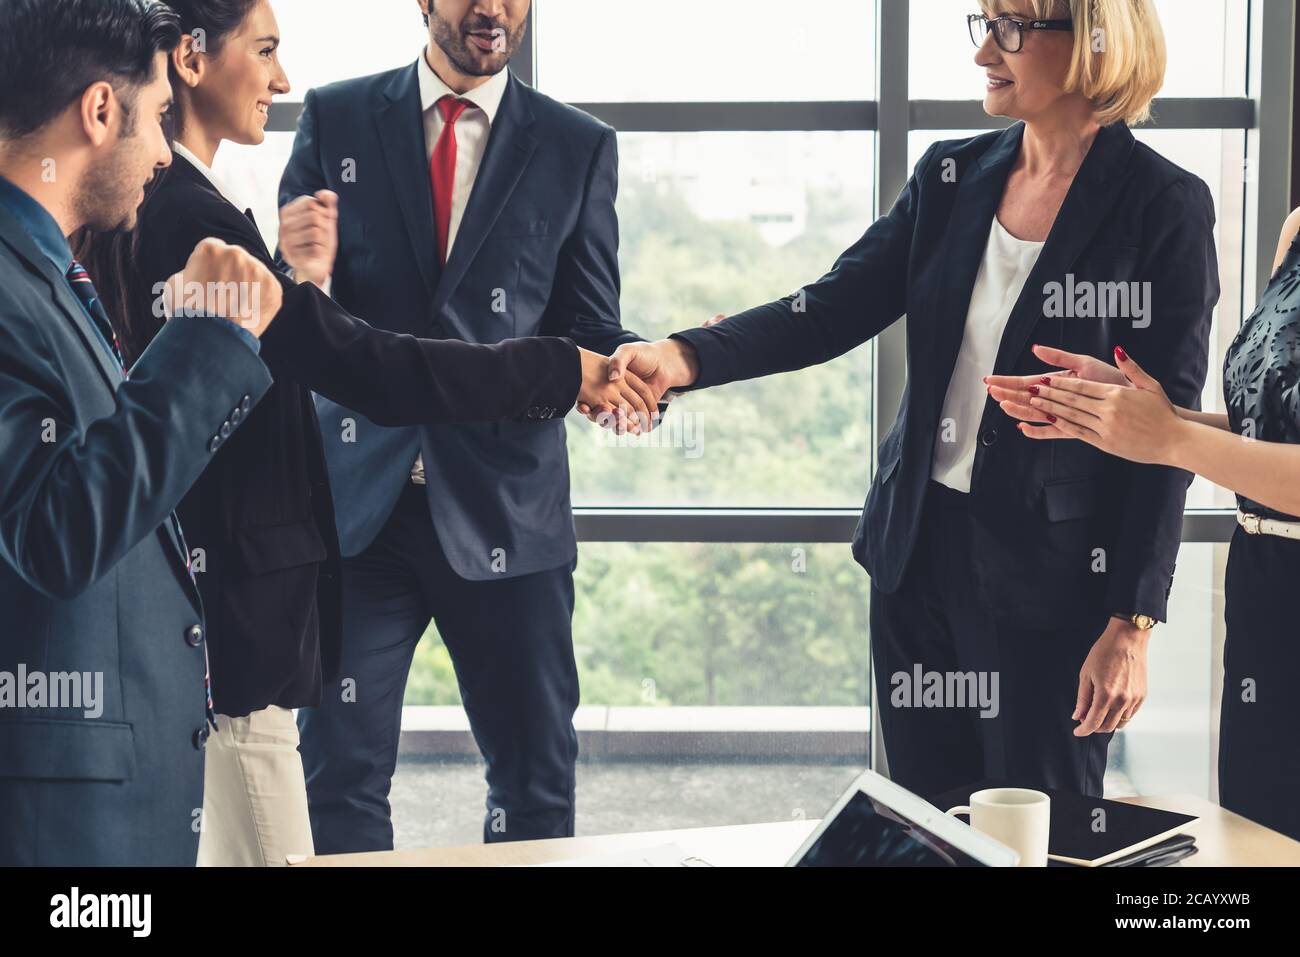 Los empresarios se dan un apretón de manos en la oficina corporativa Foto de stock